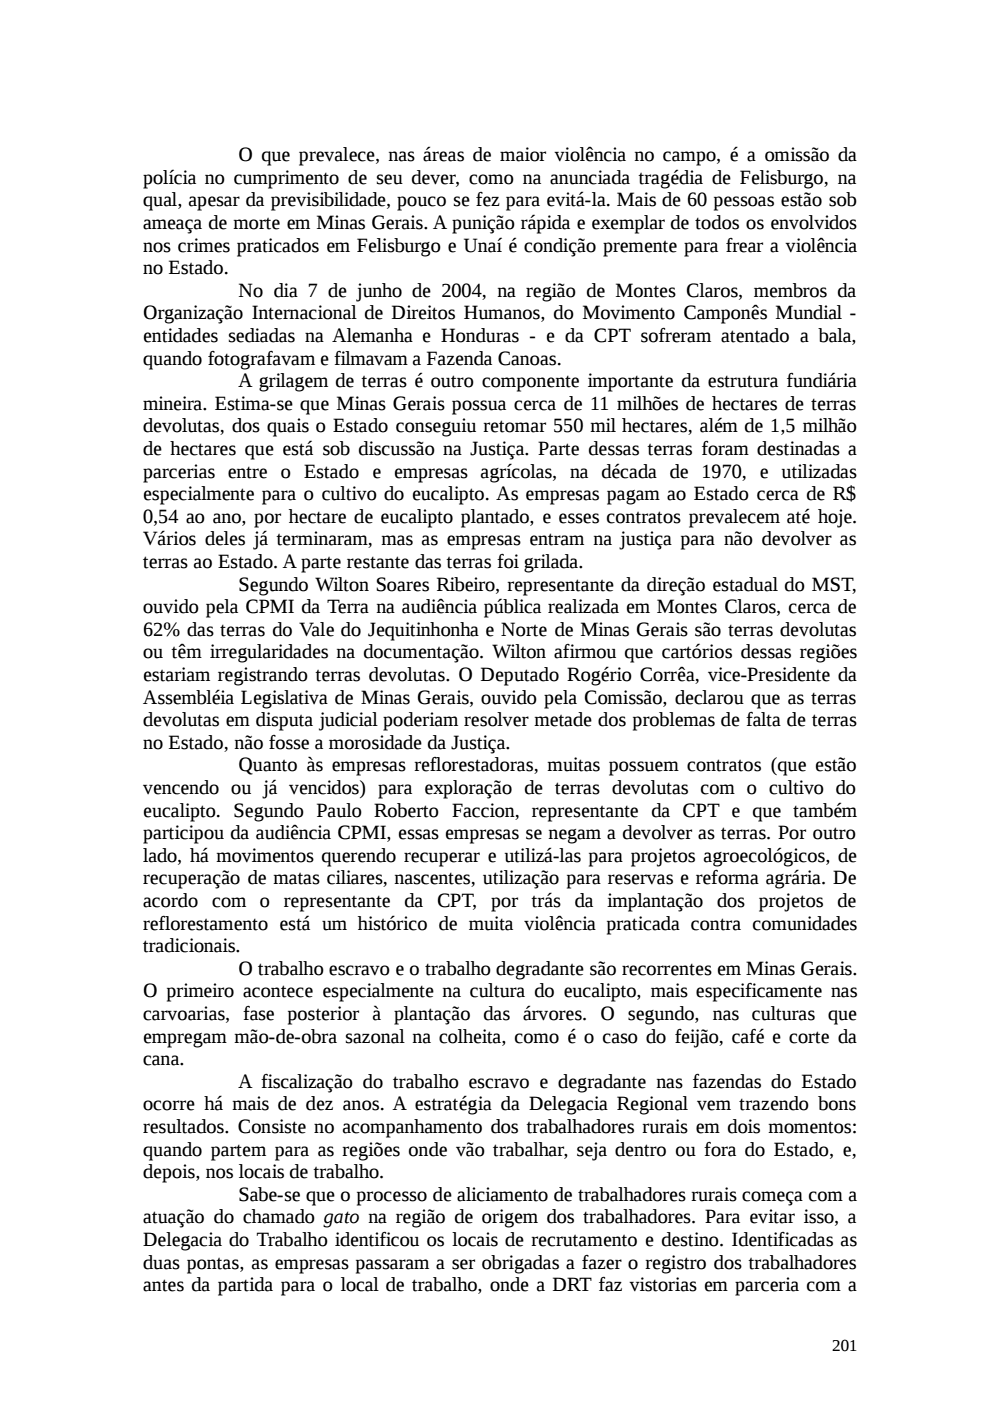 Page 201 from Relatório final da comissão